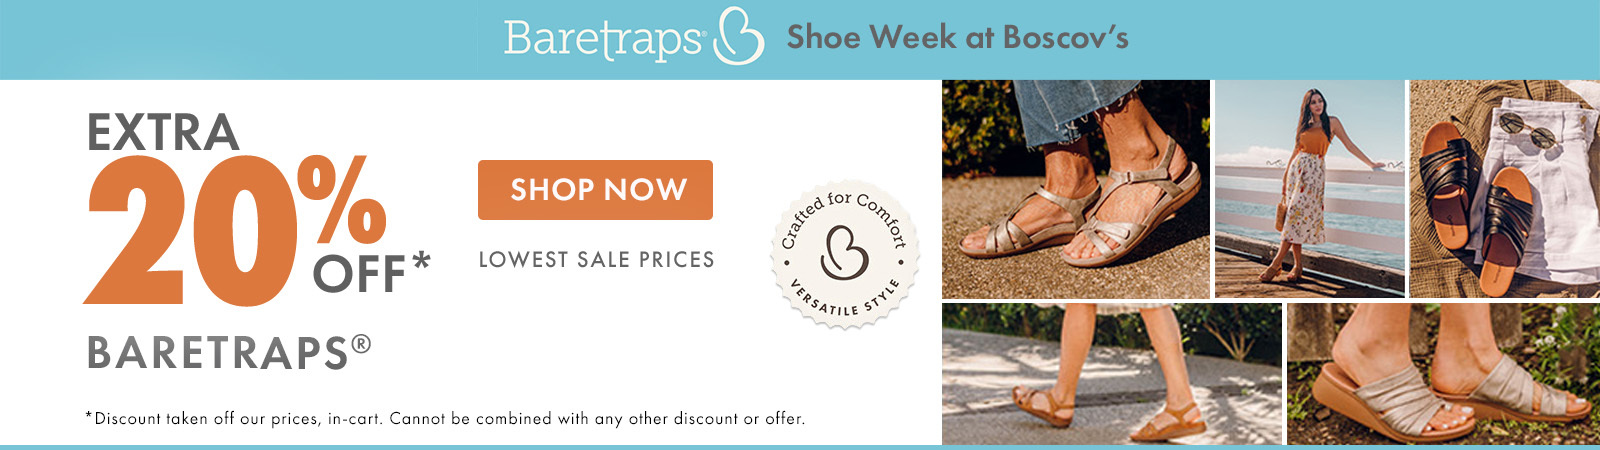 Baretraps Shoe Week at Boscov's